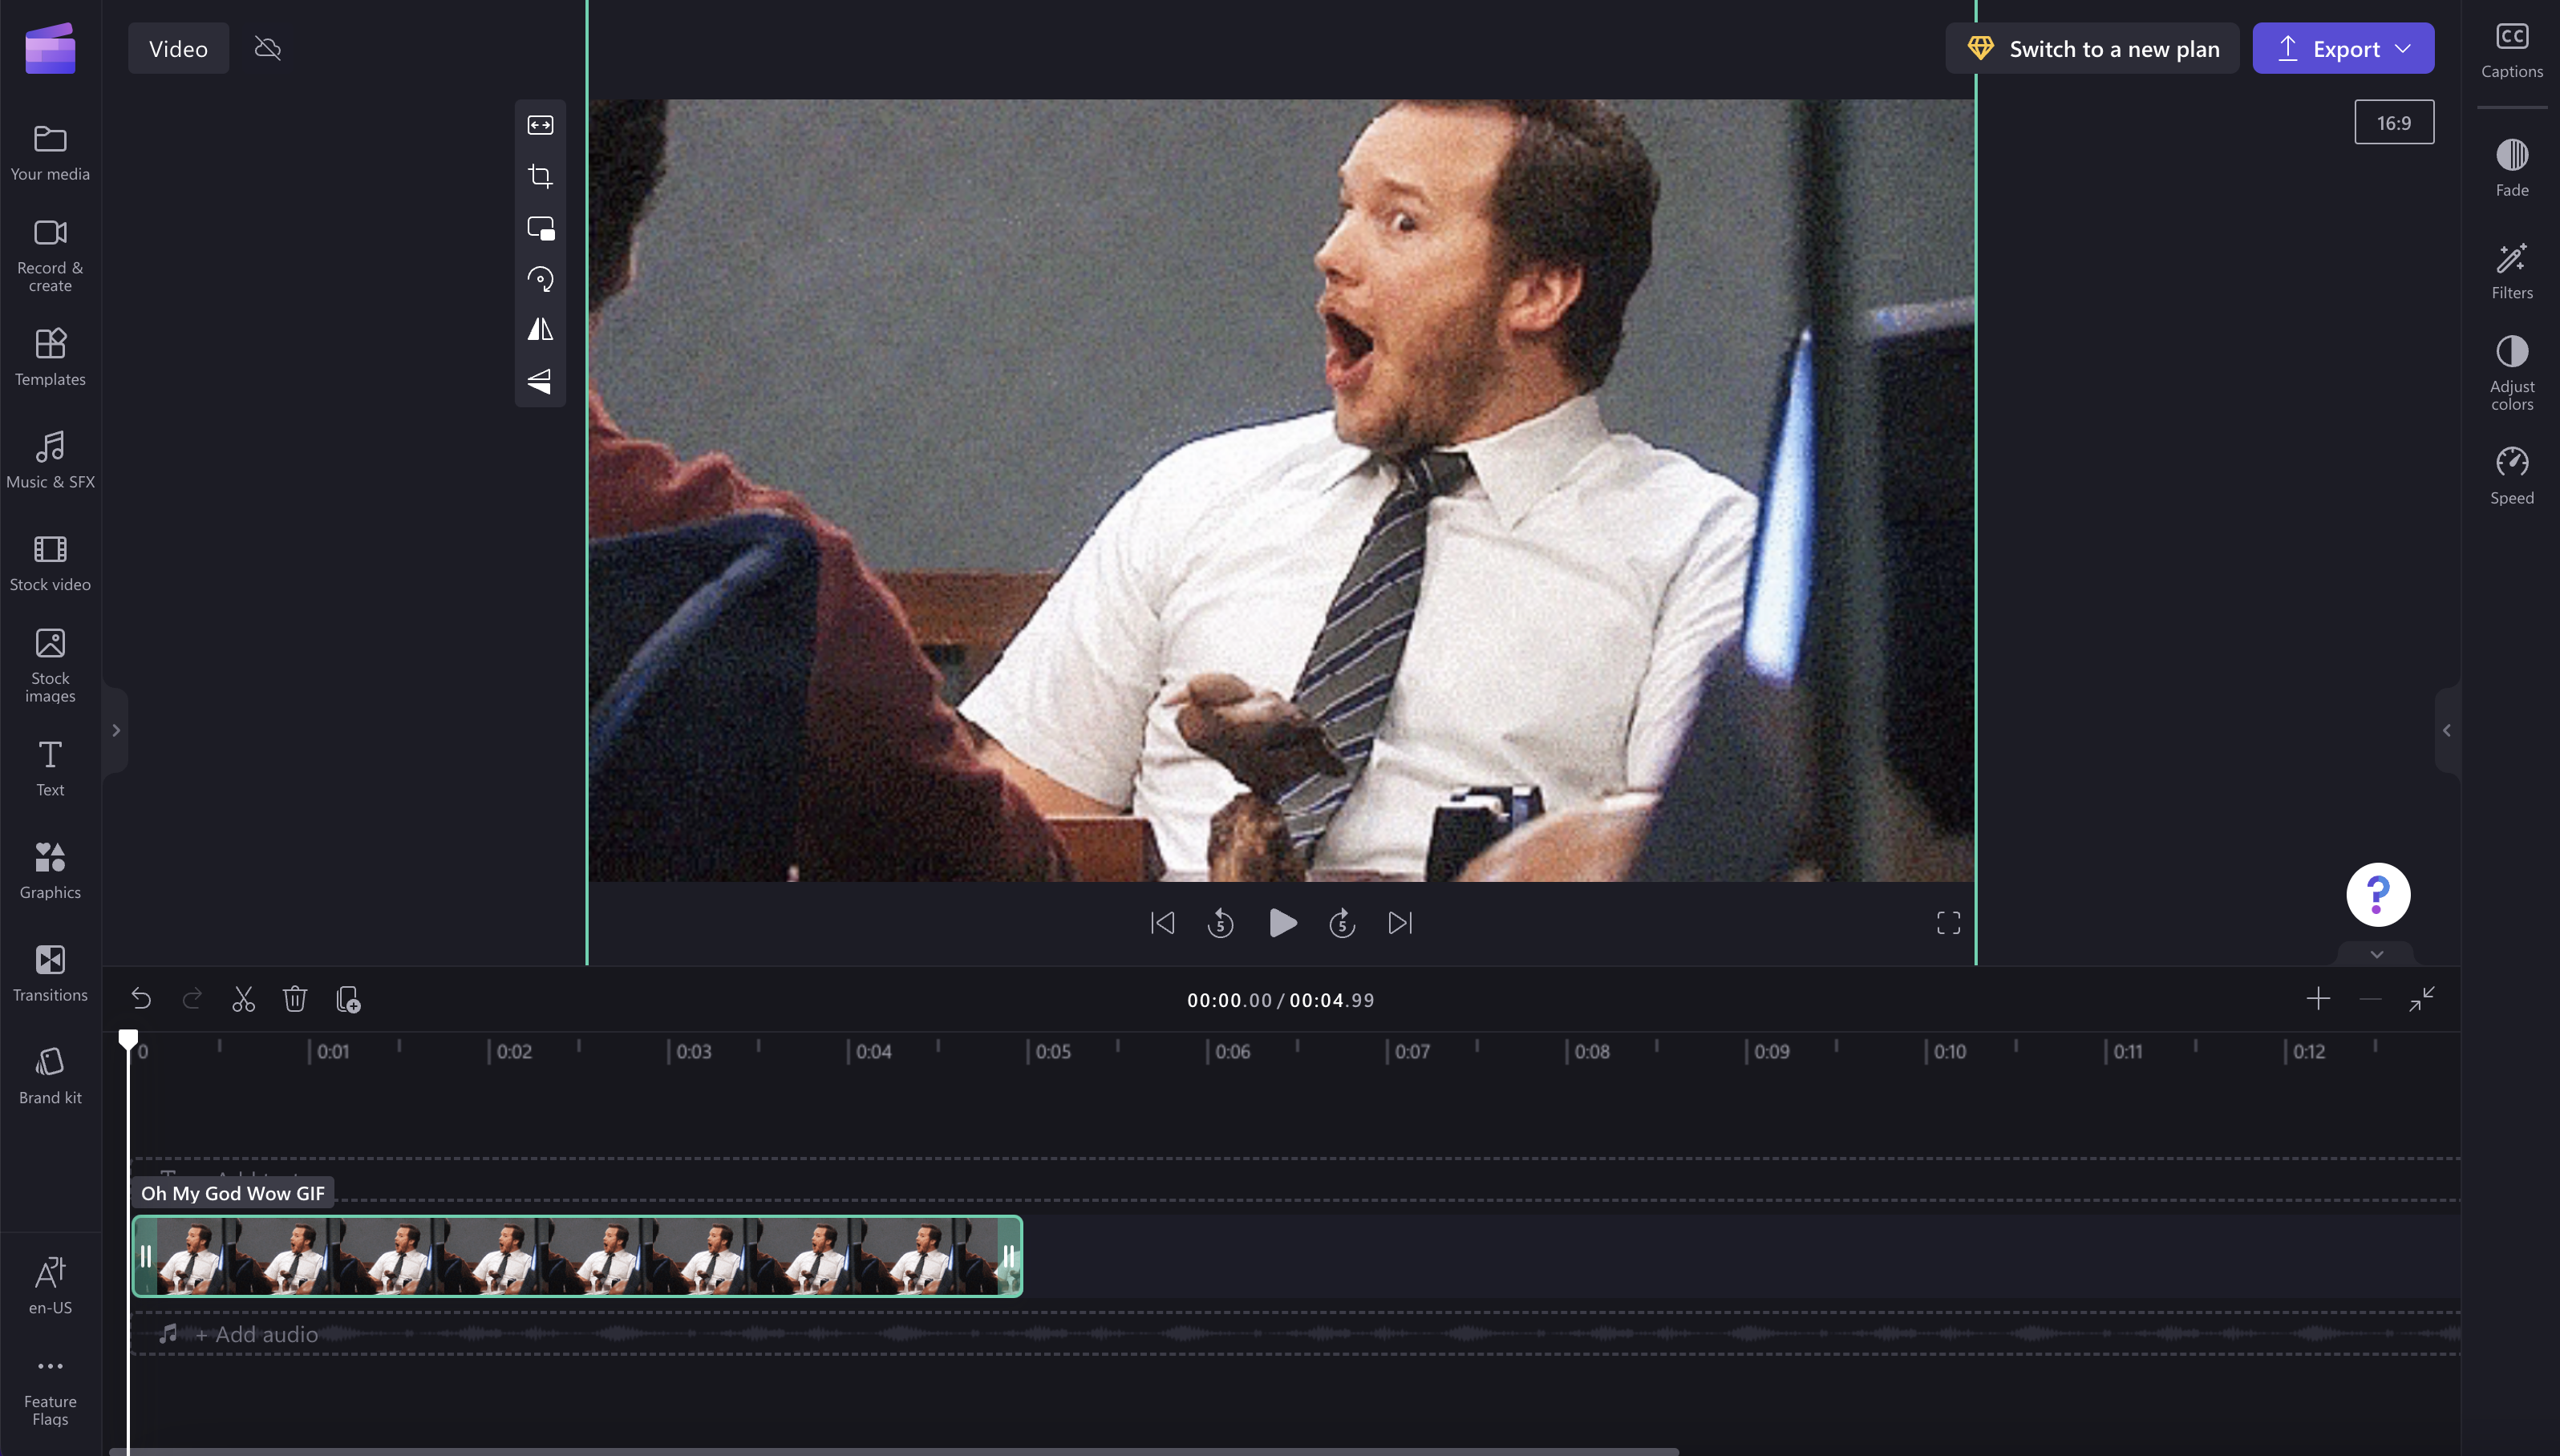 O imagine cu un GIF care se potrivește raportului de aspect video.